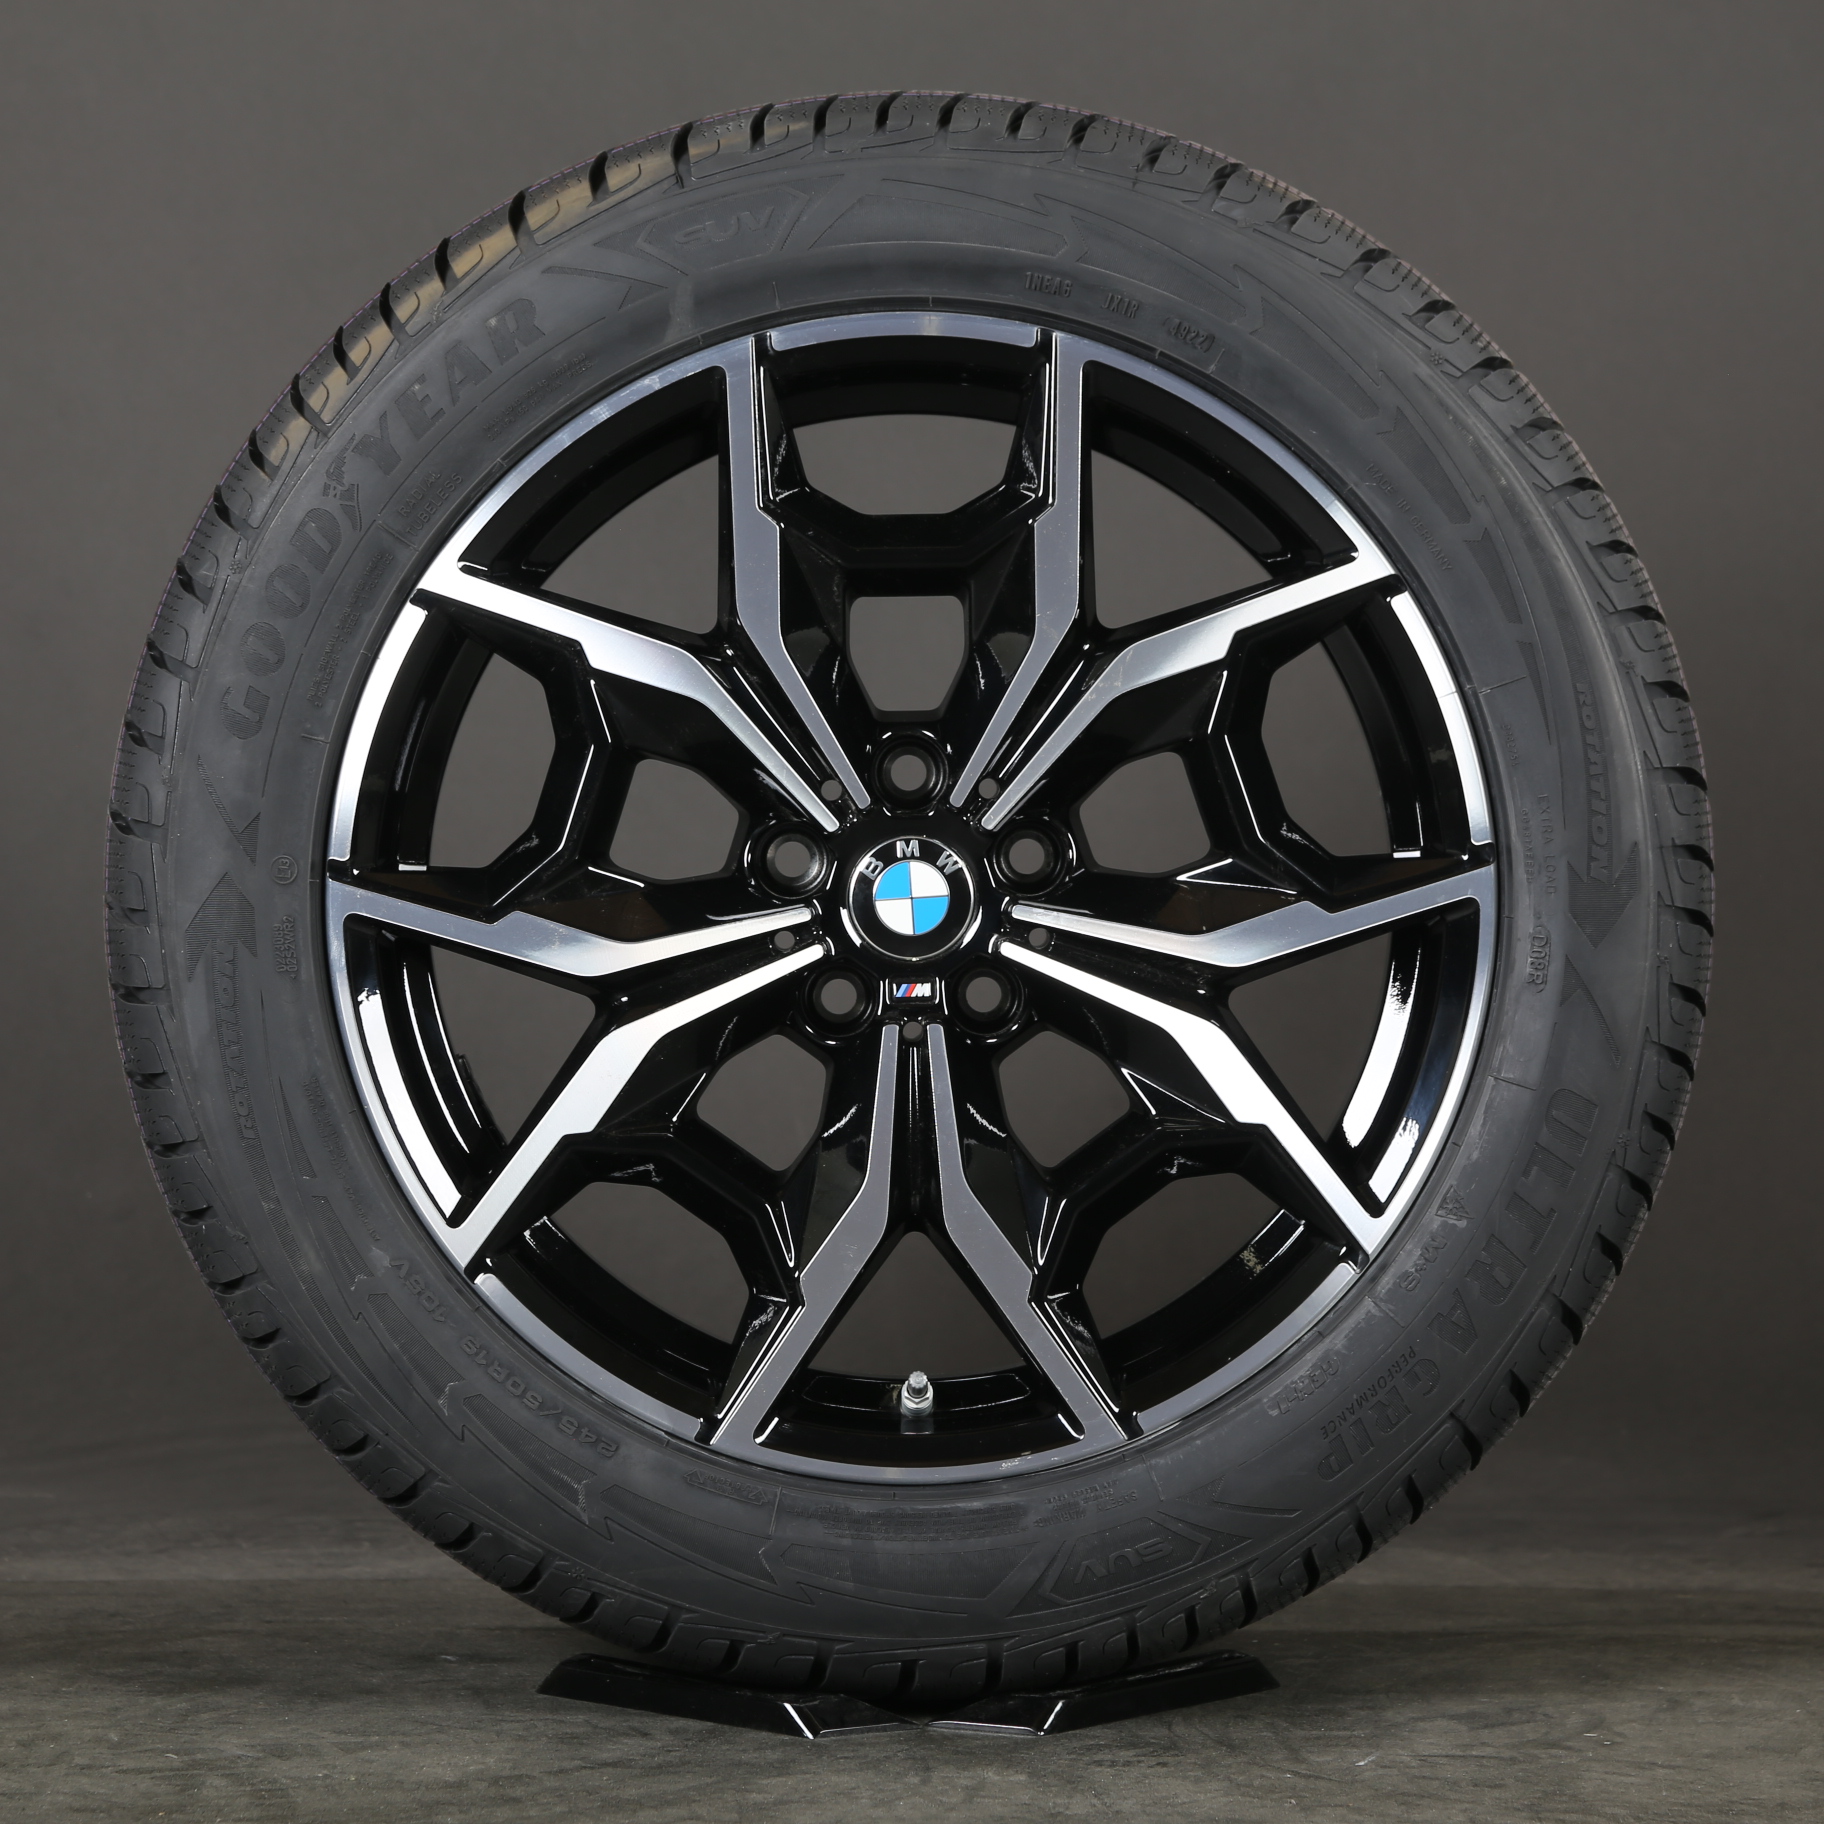 19 pulgadas ruedas de invierno Original BMW X3 X4 G01 G02 M887 7916263 Ruedas neumáticos de invierno